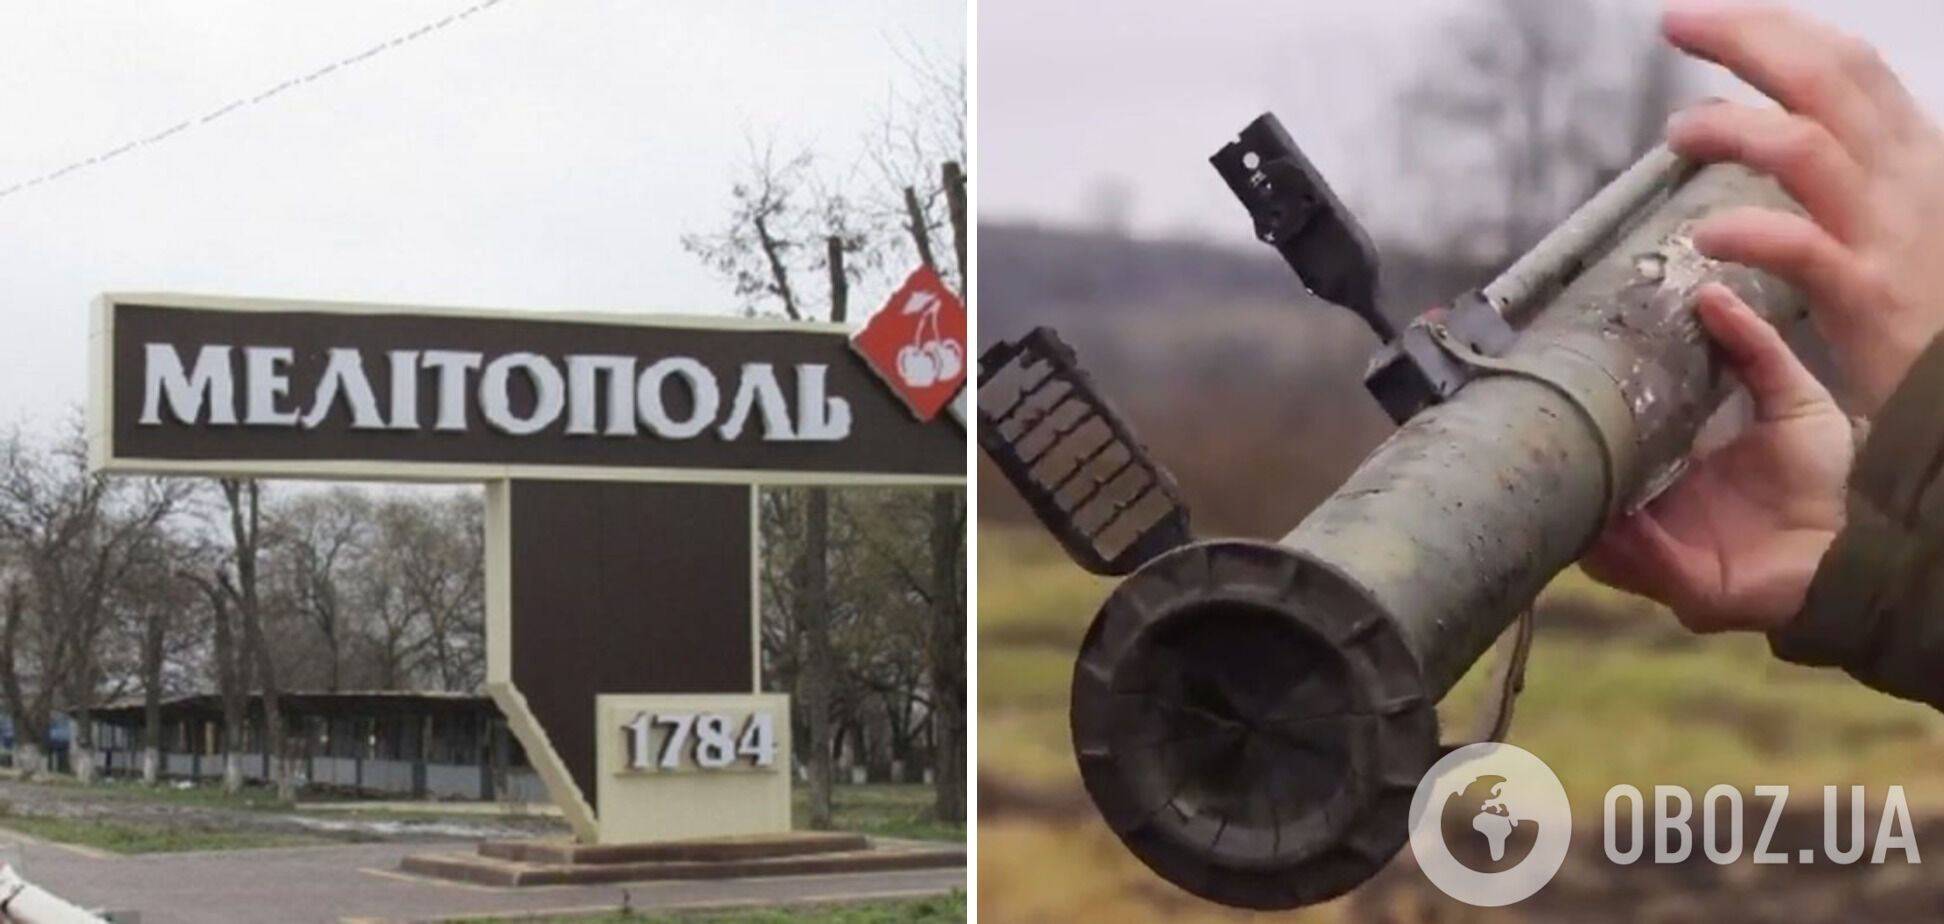 В Мелитополе оккупанты принесли на соревнование заряженный гранатомет: он выстрелил, есть раненые